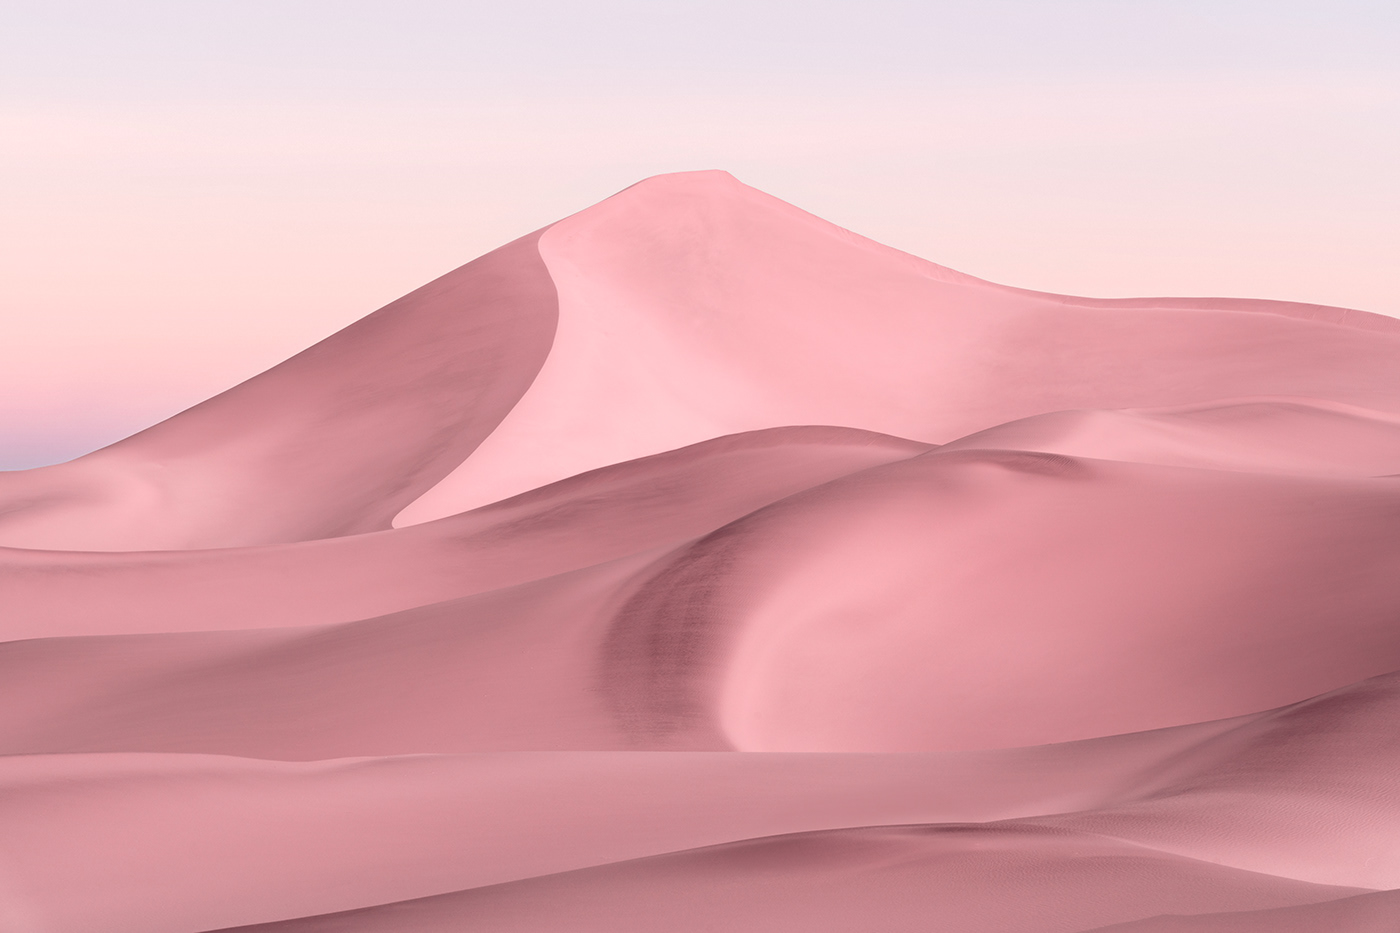 desert Magic Reality pink desert sand hill wallpaper 壁纸  粉色沙漠 魔幻现实 鸣沙山 Jonas daley